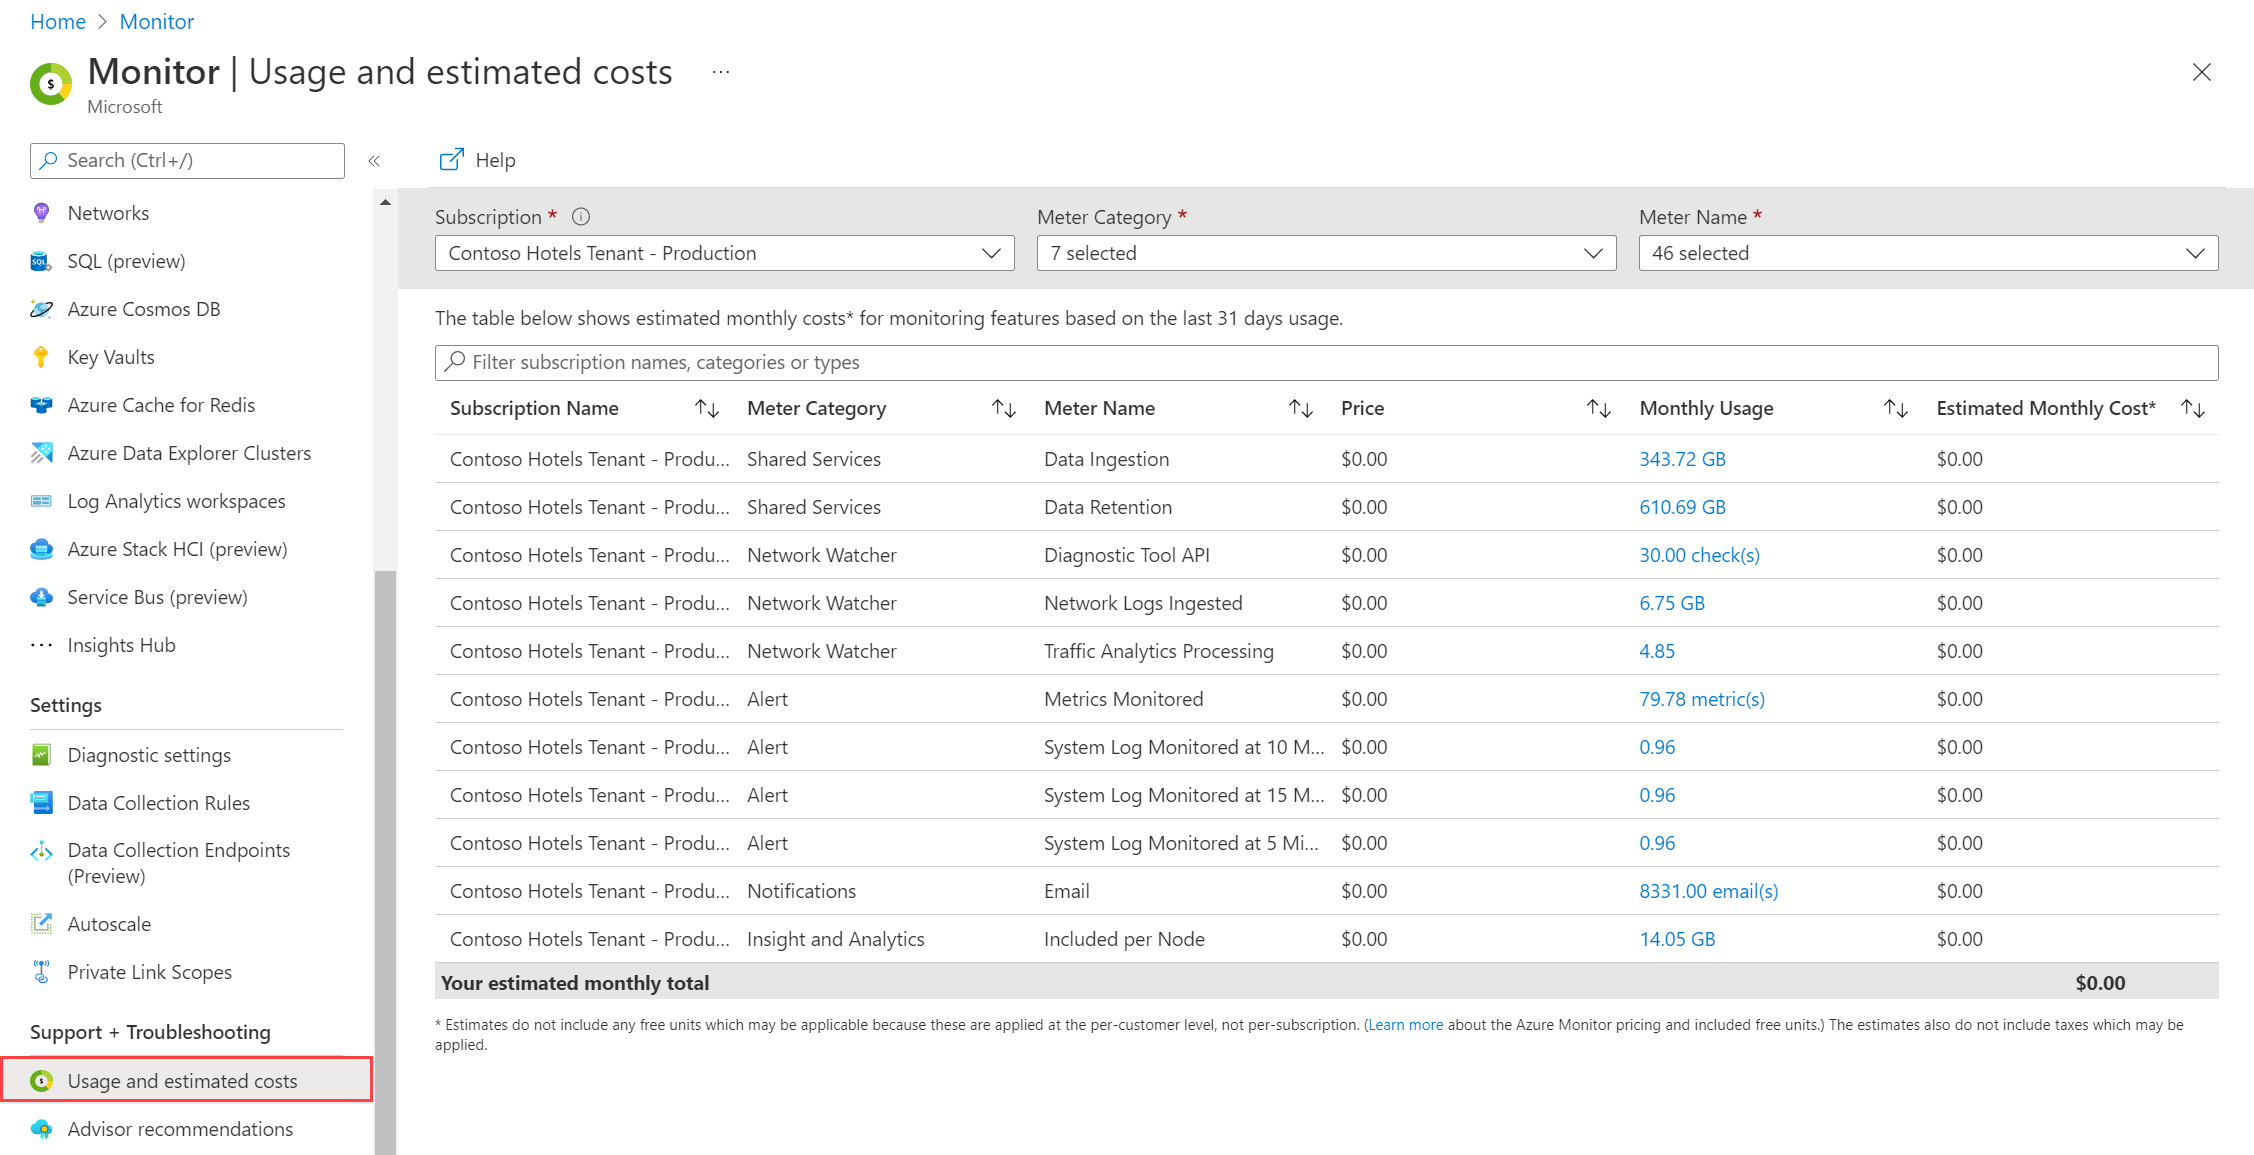 Azure 门户的屏幕截图，其中显示了使用情况和估算成本。